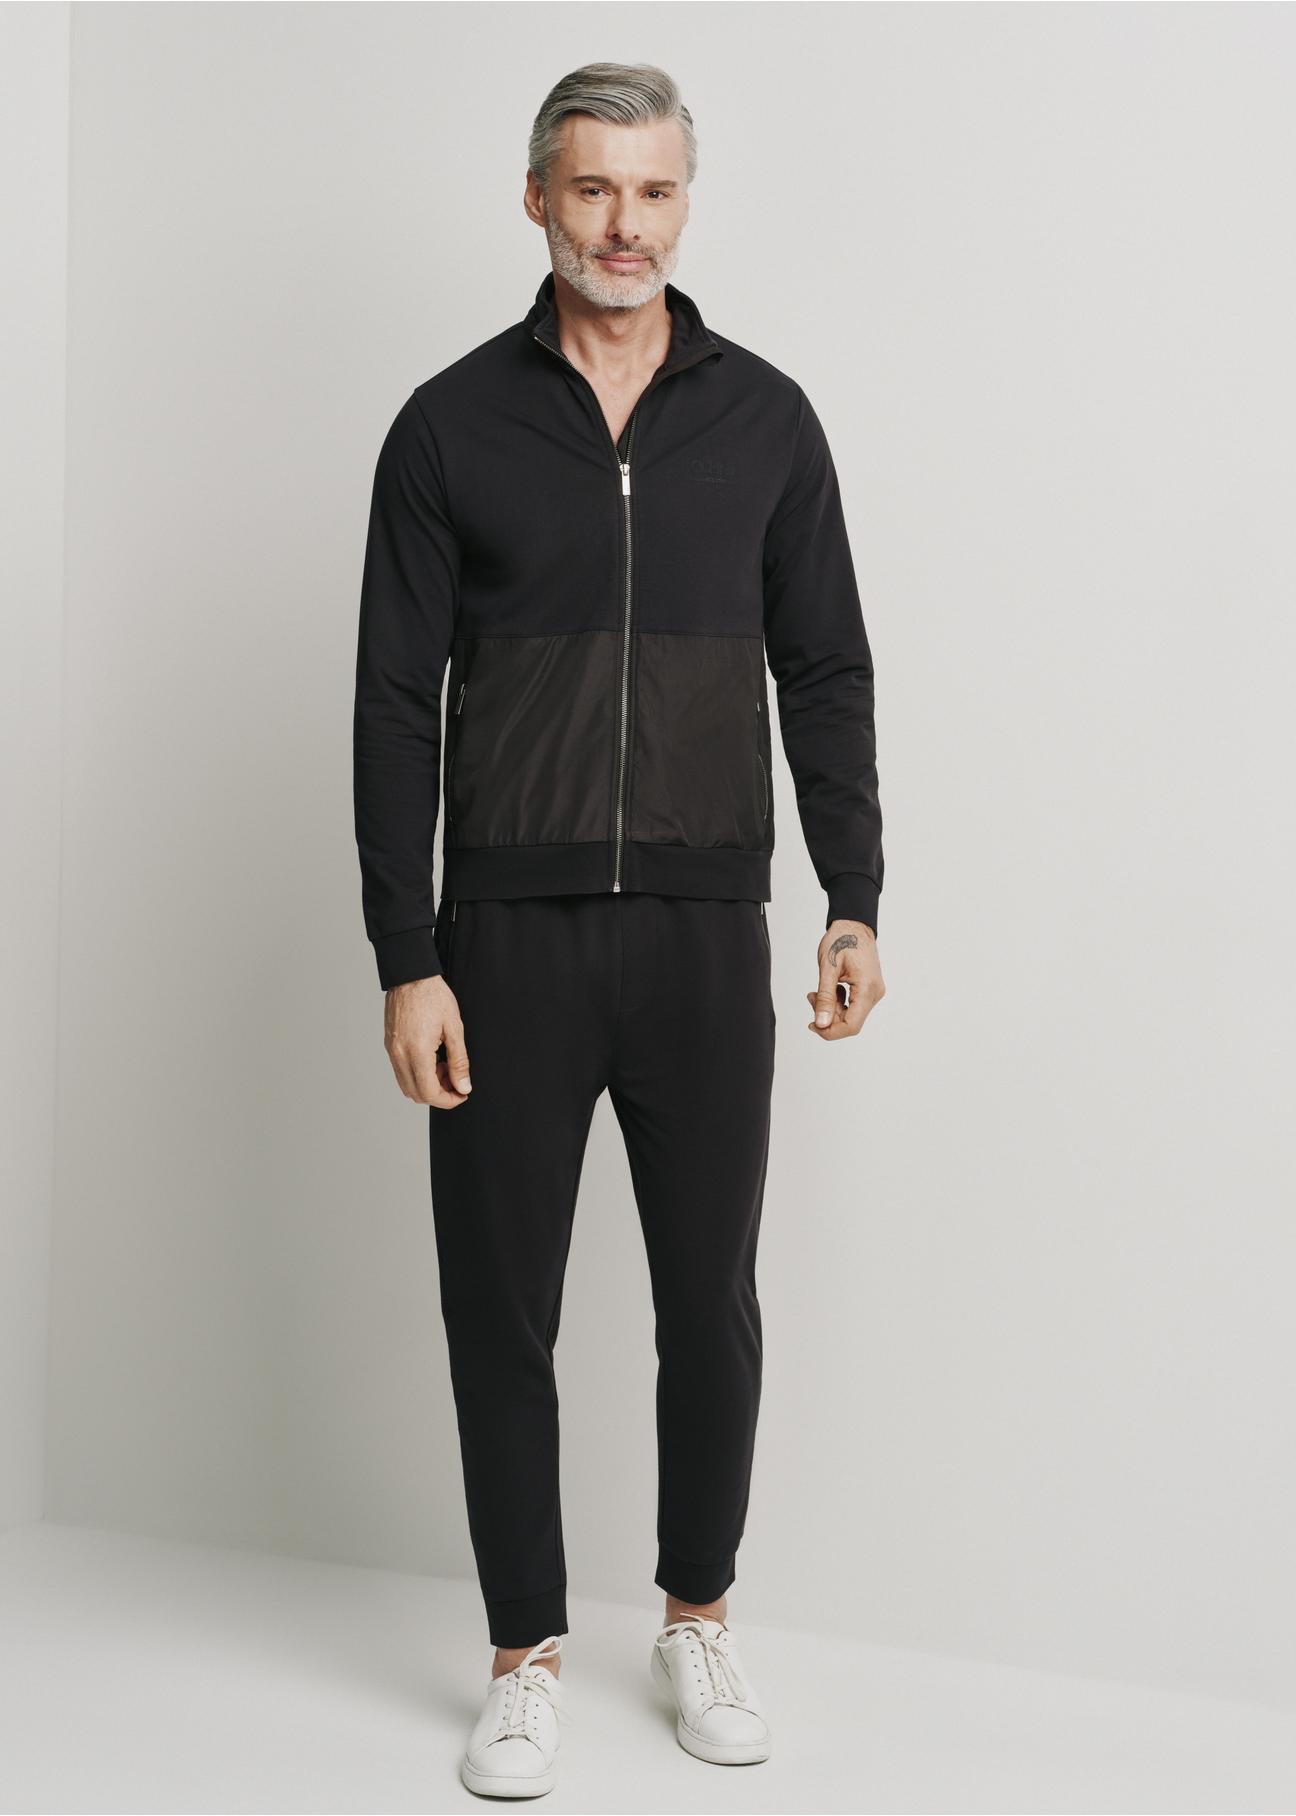 Czarne spodnie dresowe męskie SPOMT-0092-99(W24)